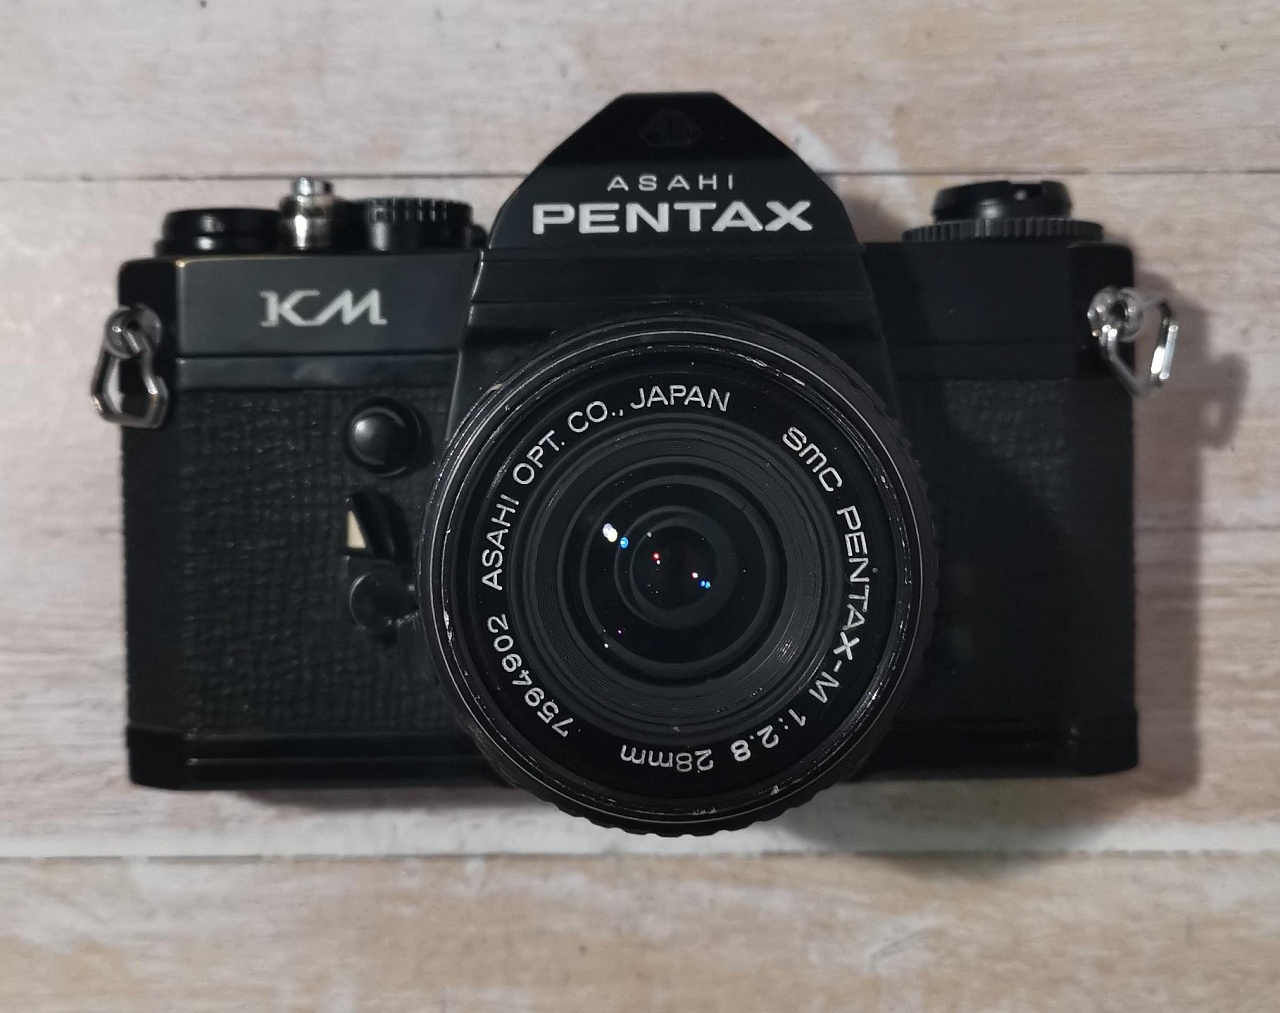 Pentax KM + SMC Pentax-M 28 mm F/2.8 фото №1